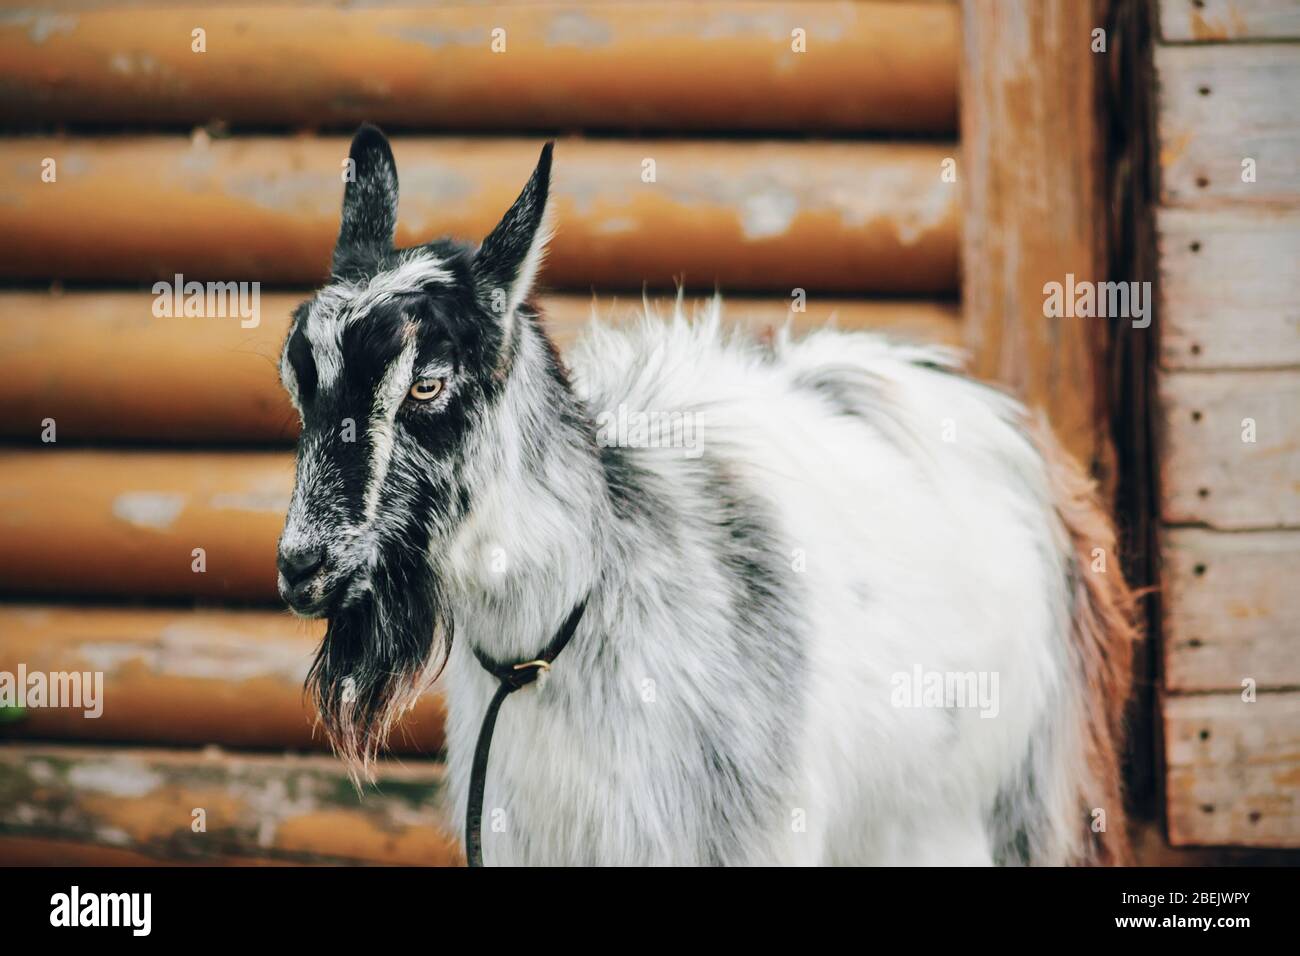 Una capra grigia e nera con un collare intorno al collo si trova vicino ad un vecchio capanno in legno. Bestiame. Foto Stock